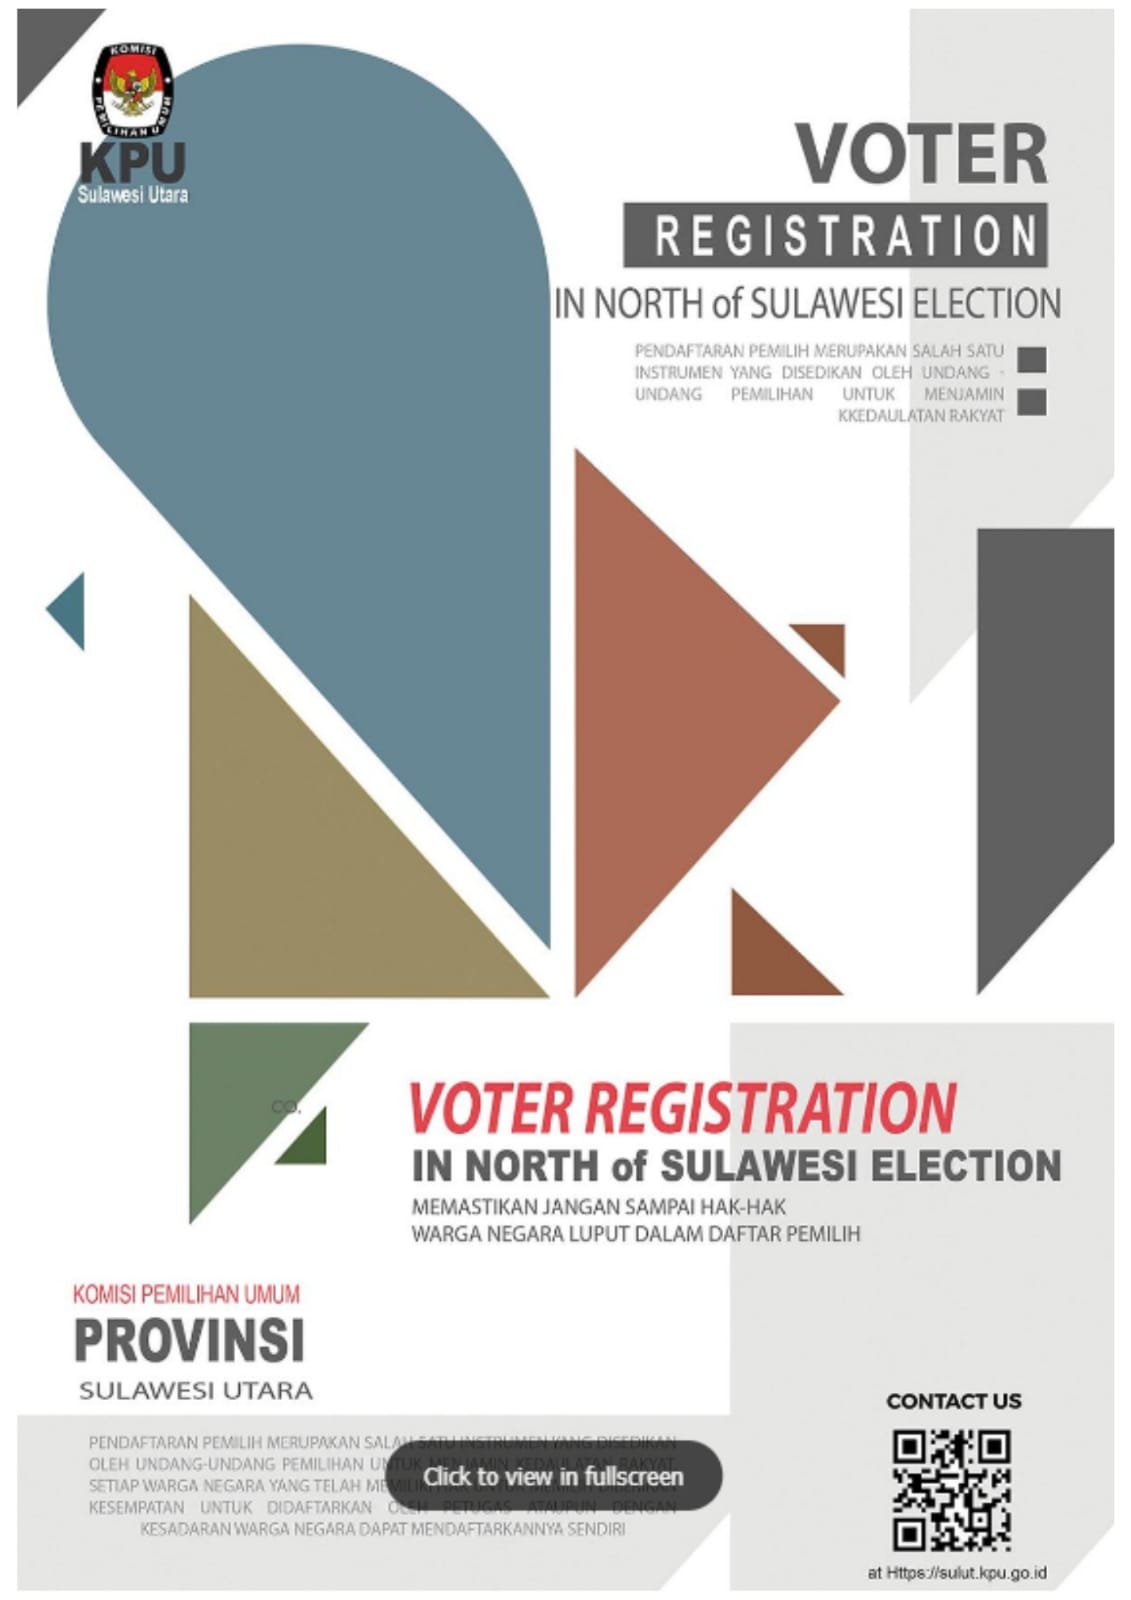 Voter Registration In North of Sulawesi Election: Memastikan Jangan Sampai Hak-Hak Warga Negara Luput dalam Daftar Pemilih